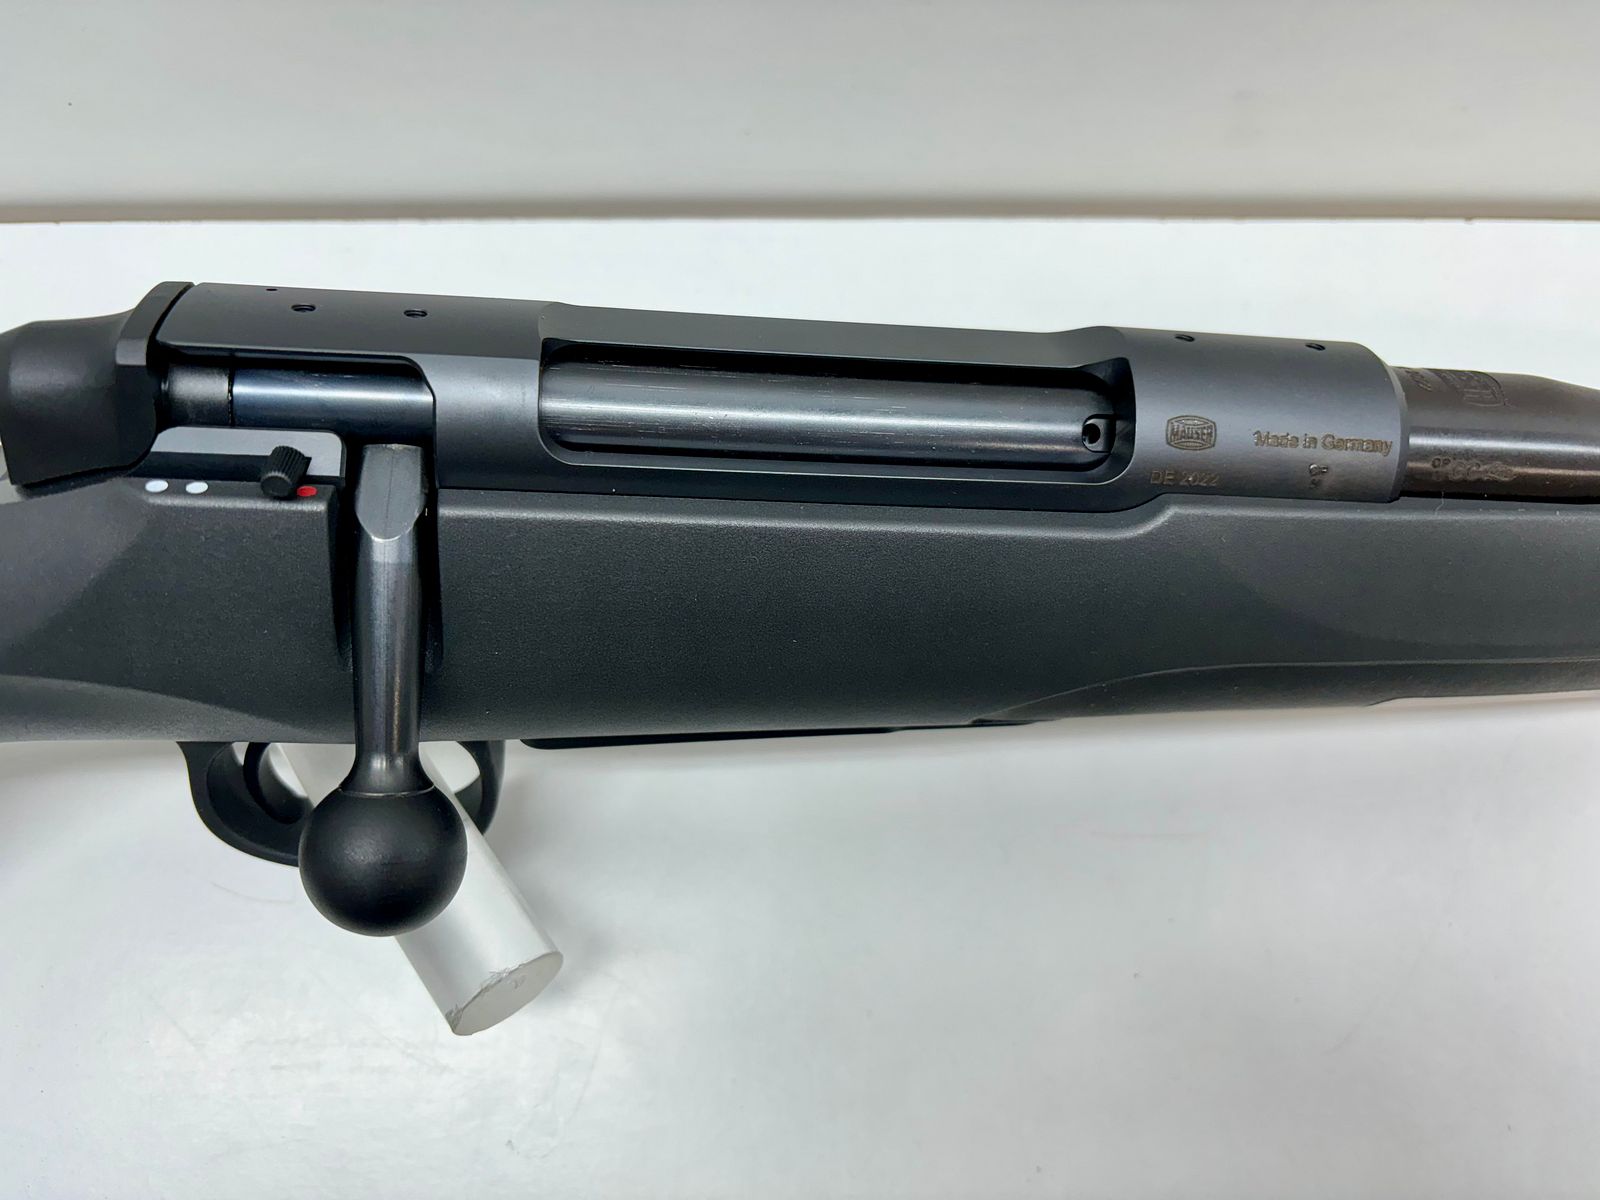 Mauser 18 Standard | 51cm | M15x1 - WaffenFriedrichs